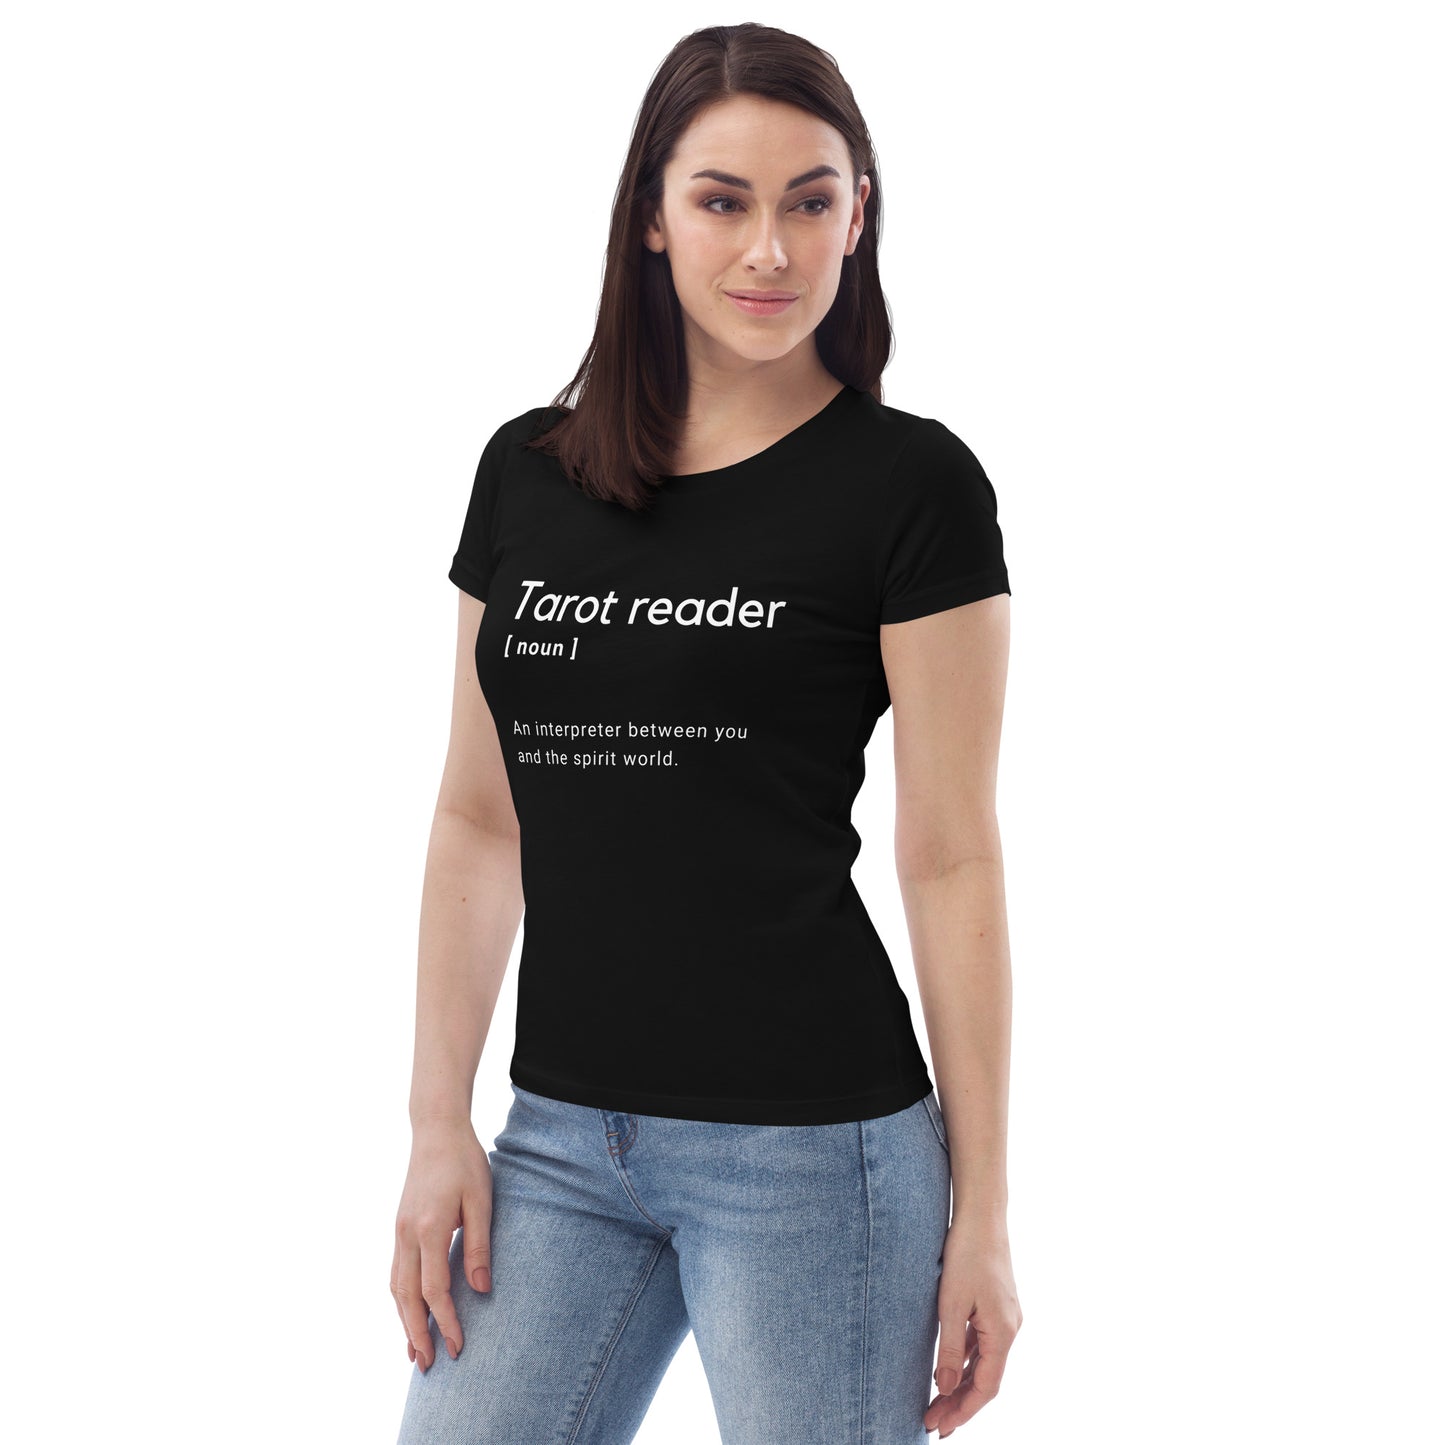 Tarot reader t-shirt